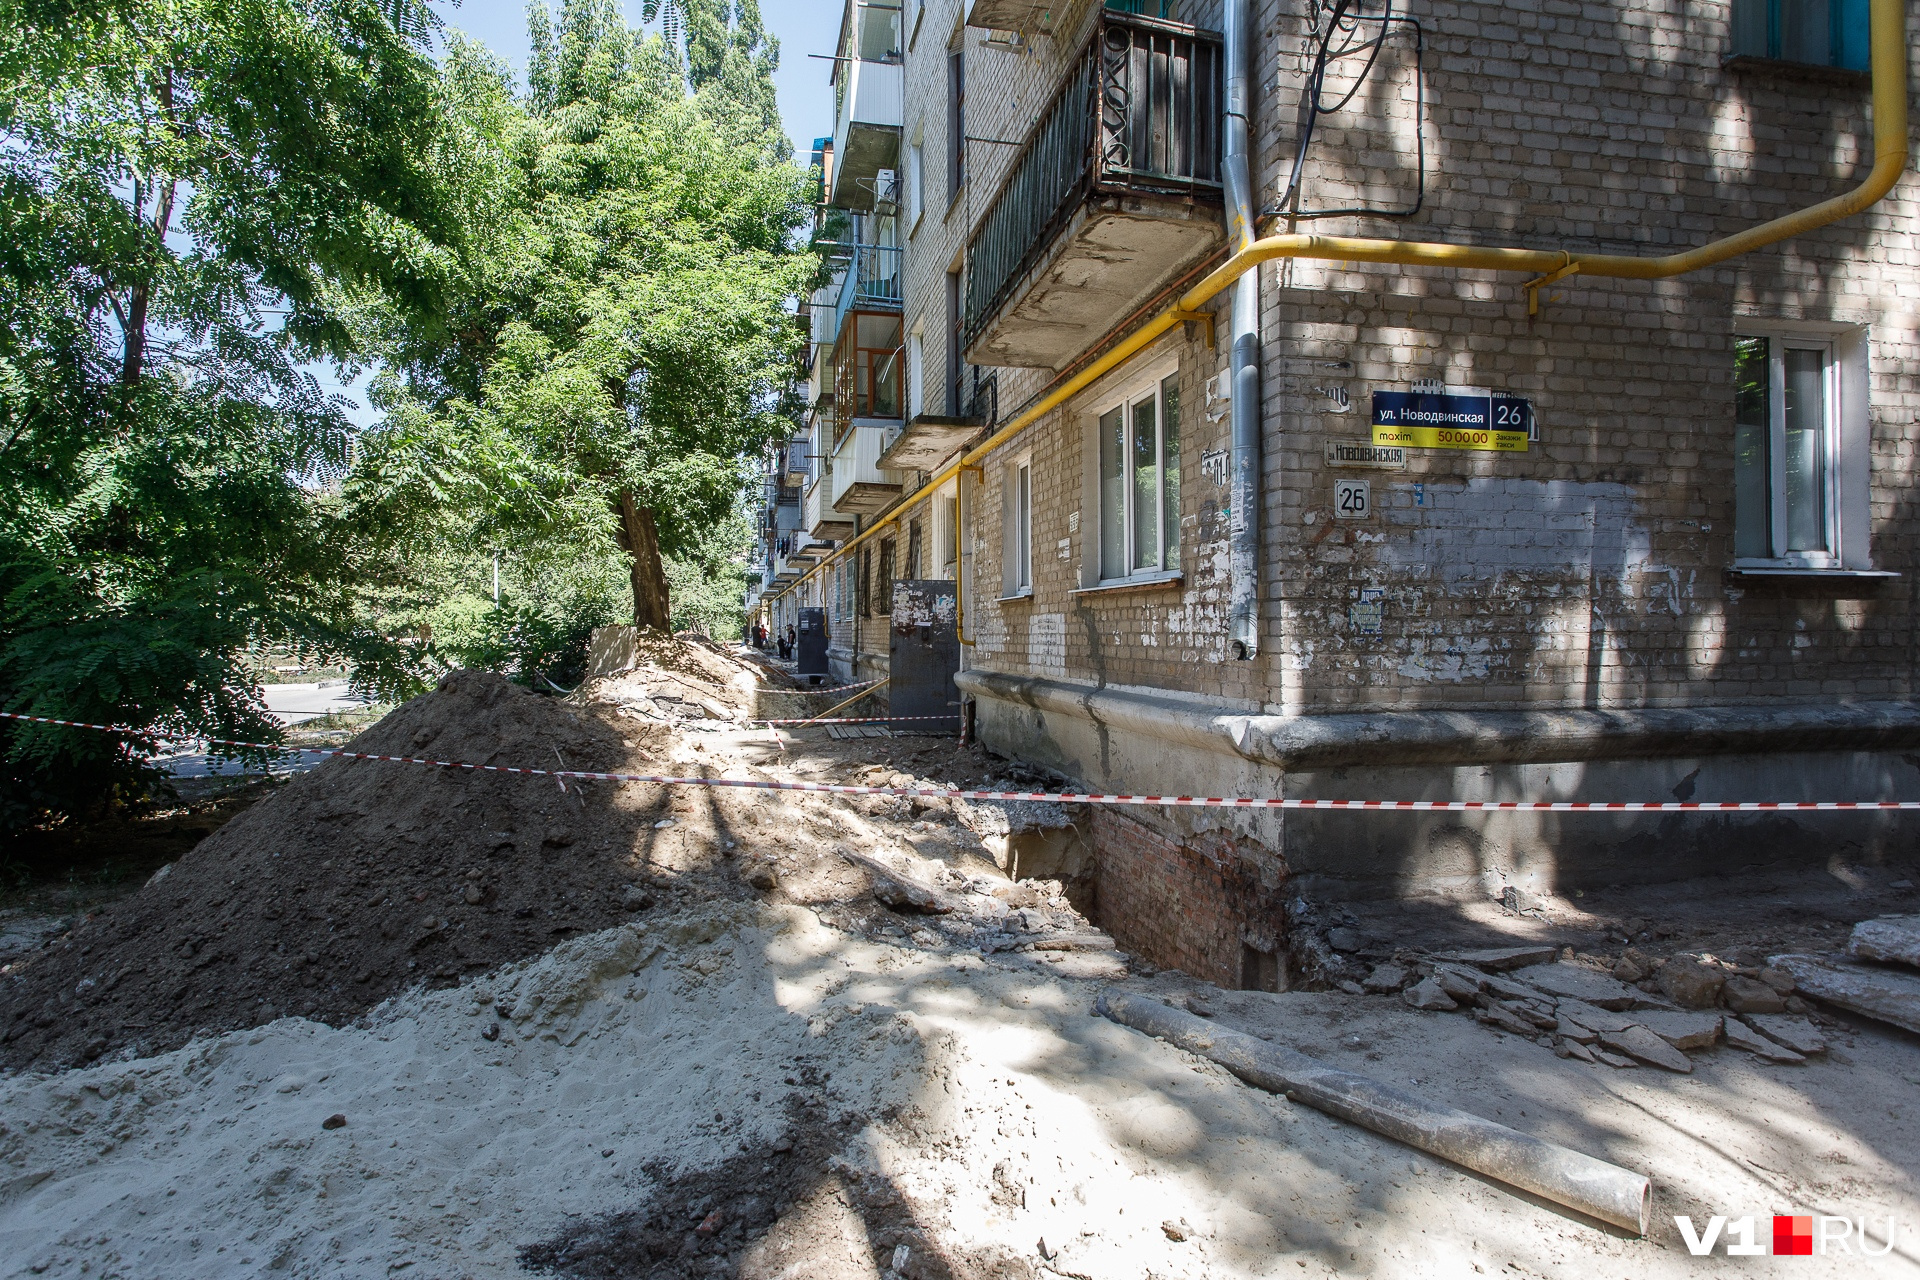 Хаос царит не только перед домом на Новодвинской, он во всей цепочке — от заказчика до простого жильца